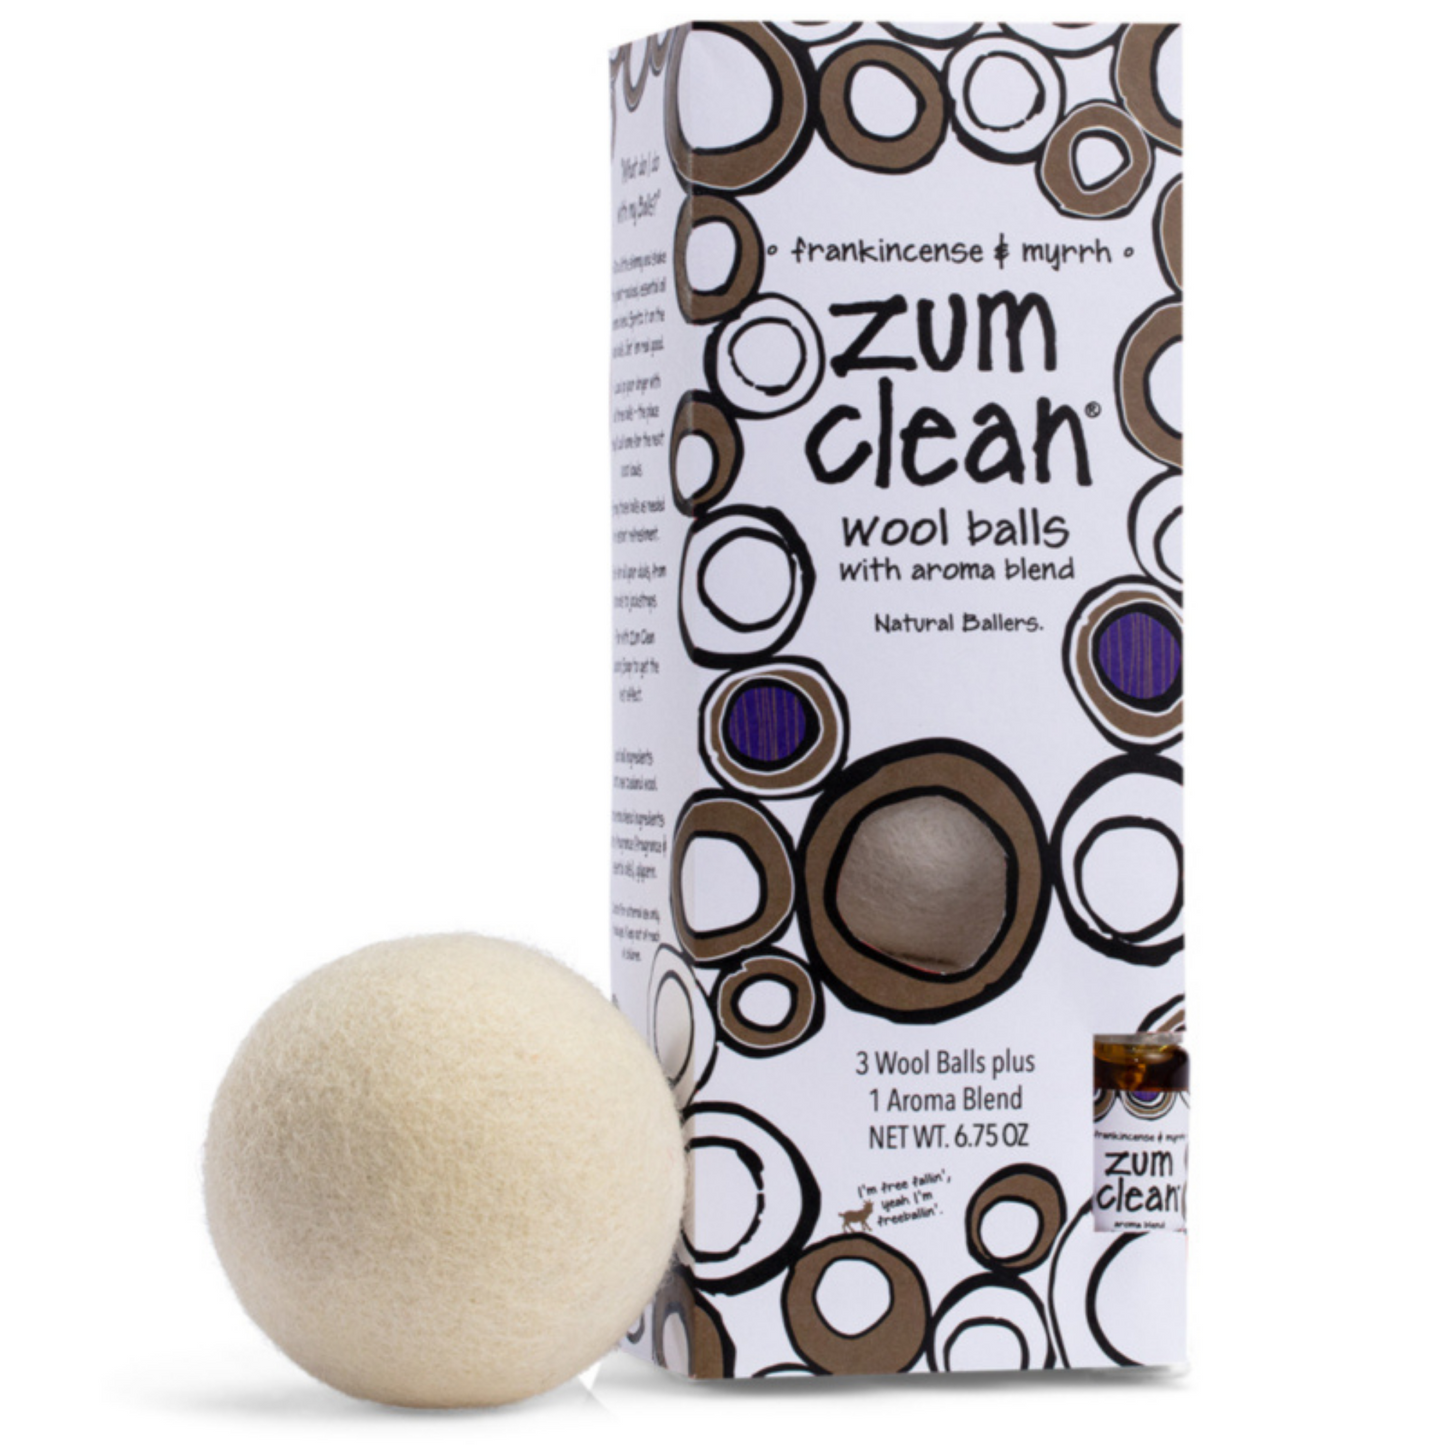 Primary image of Zum Clean Wool Dryer Balls 